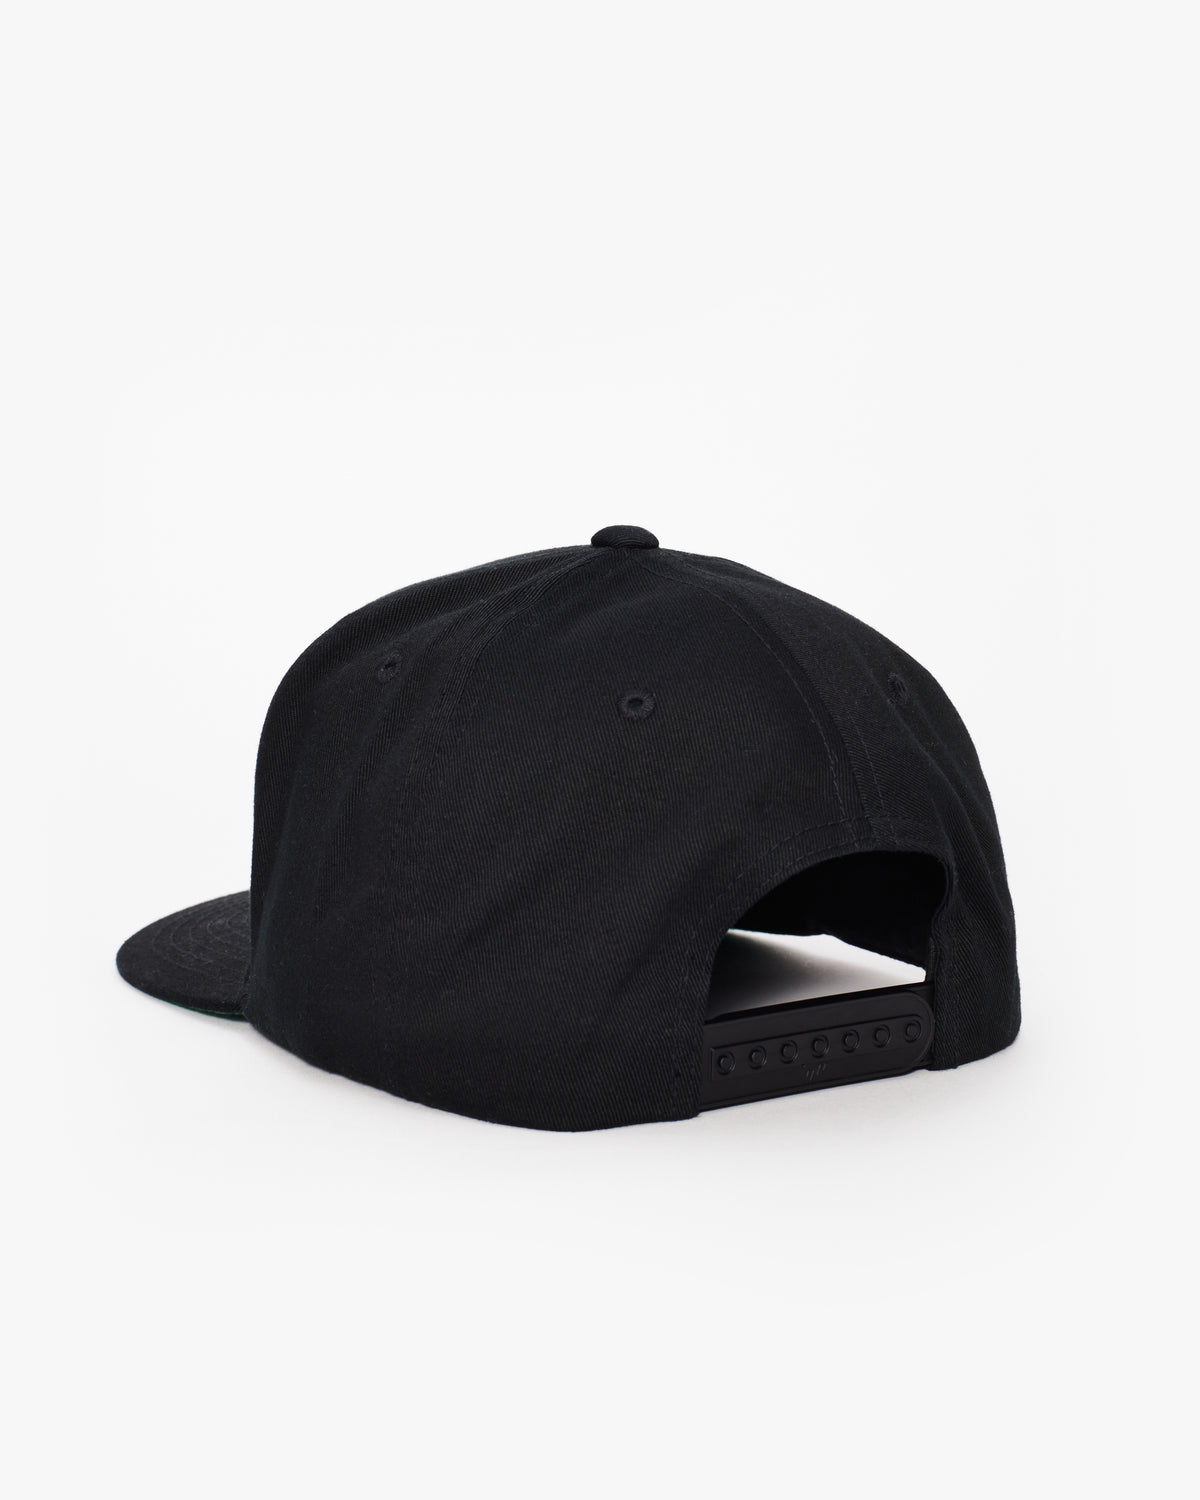 Equinox Snapback Flat Brim Hat – The Shop at Equinox